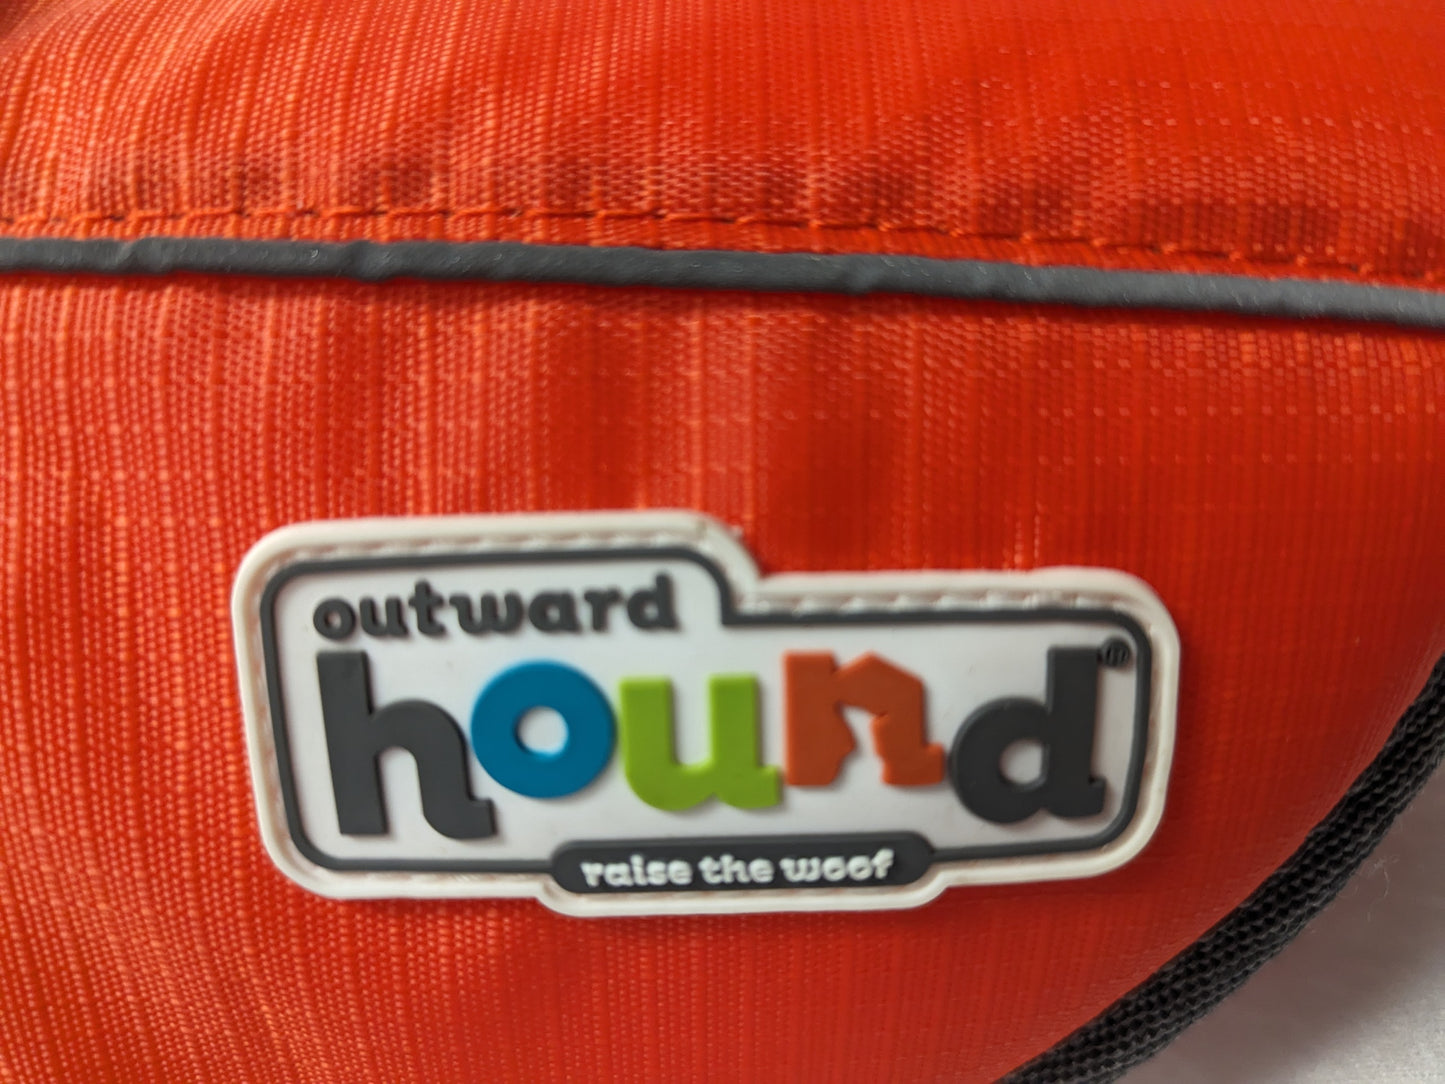 Hound Dog Floatation Jacket Size Medium Color Orange Condition Used